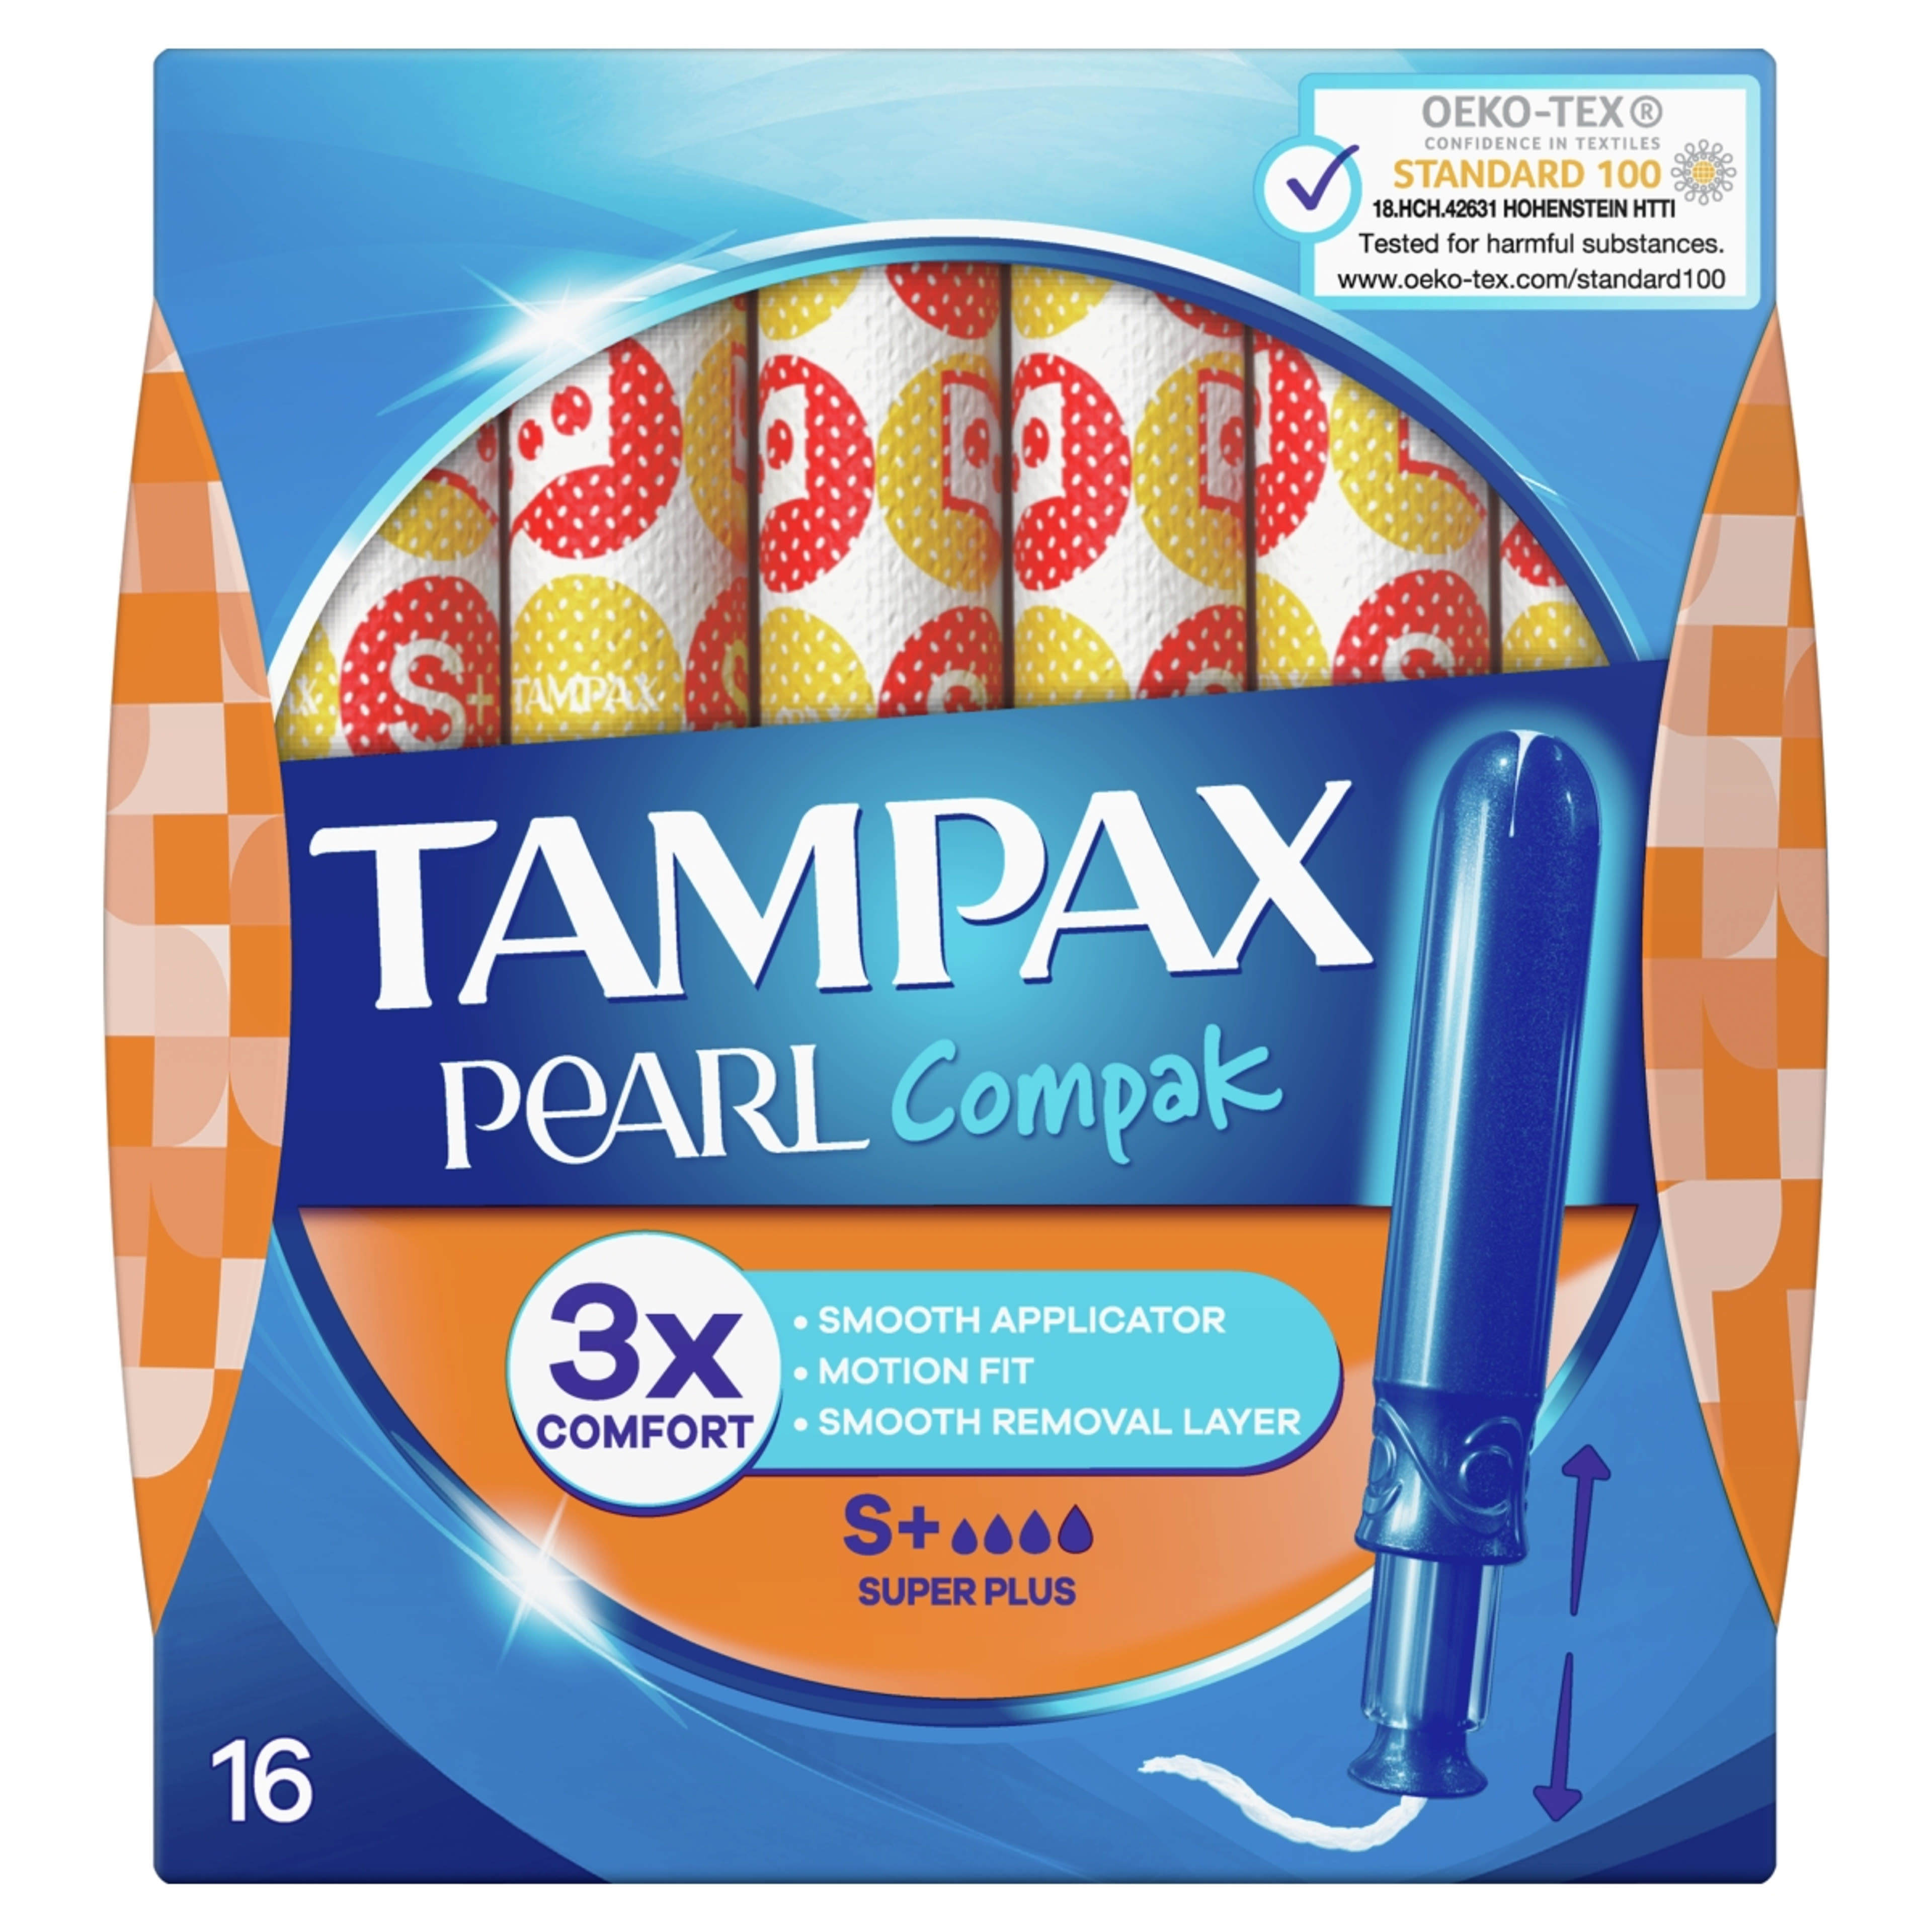 Tampax tampon compak pearl super plus - 16 db-1